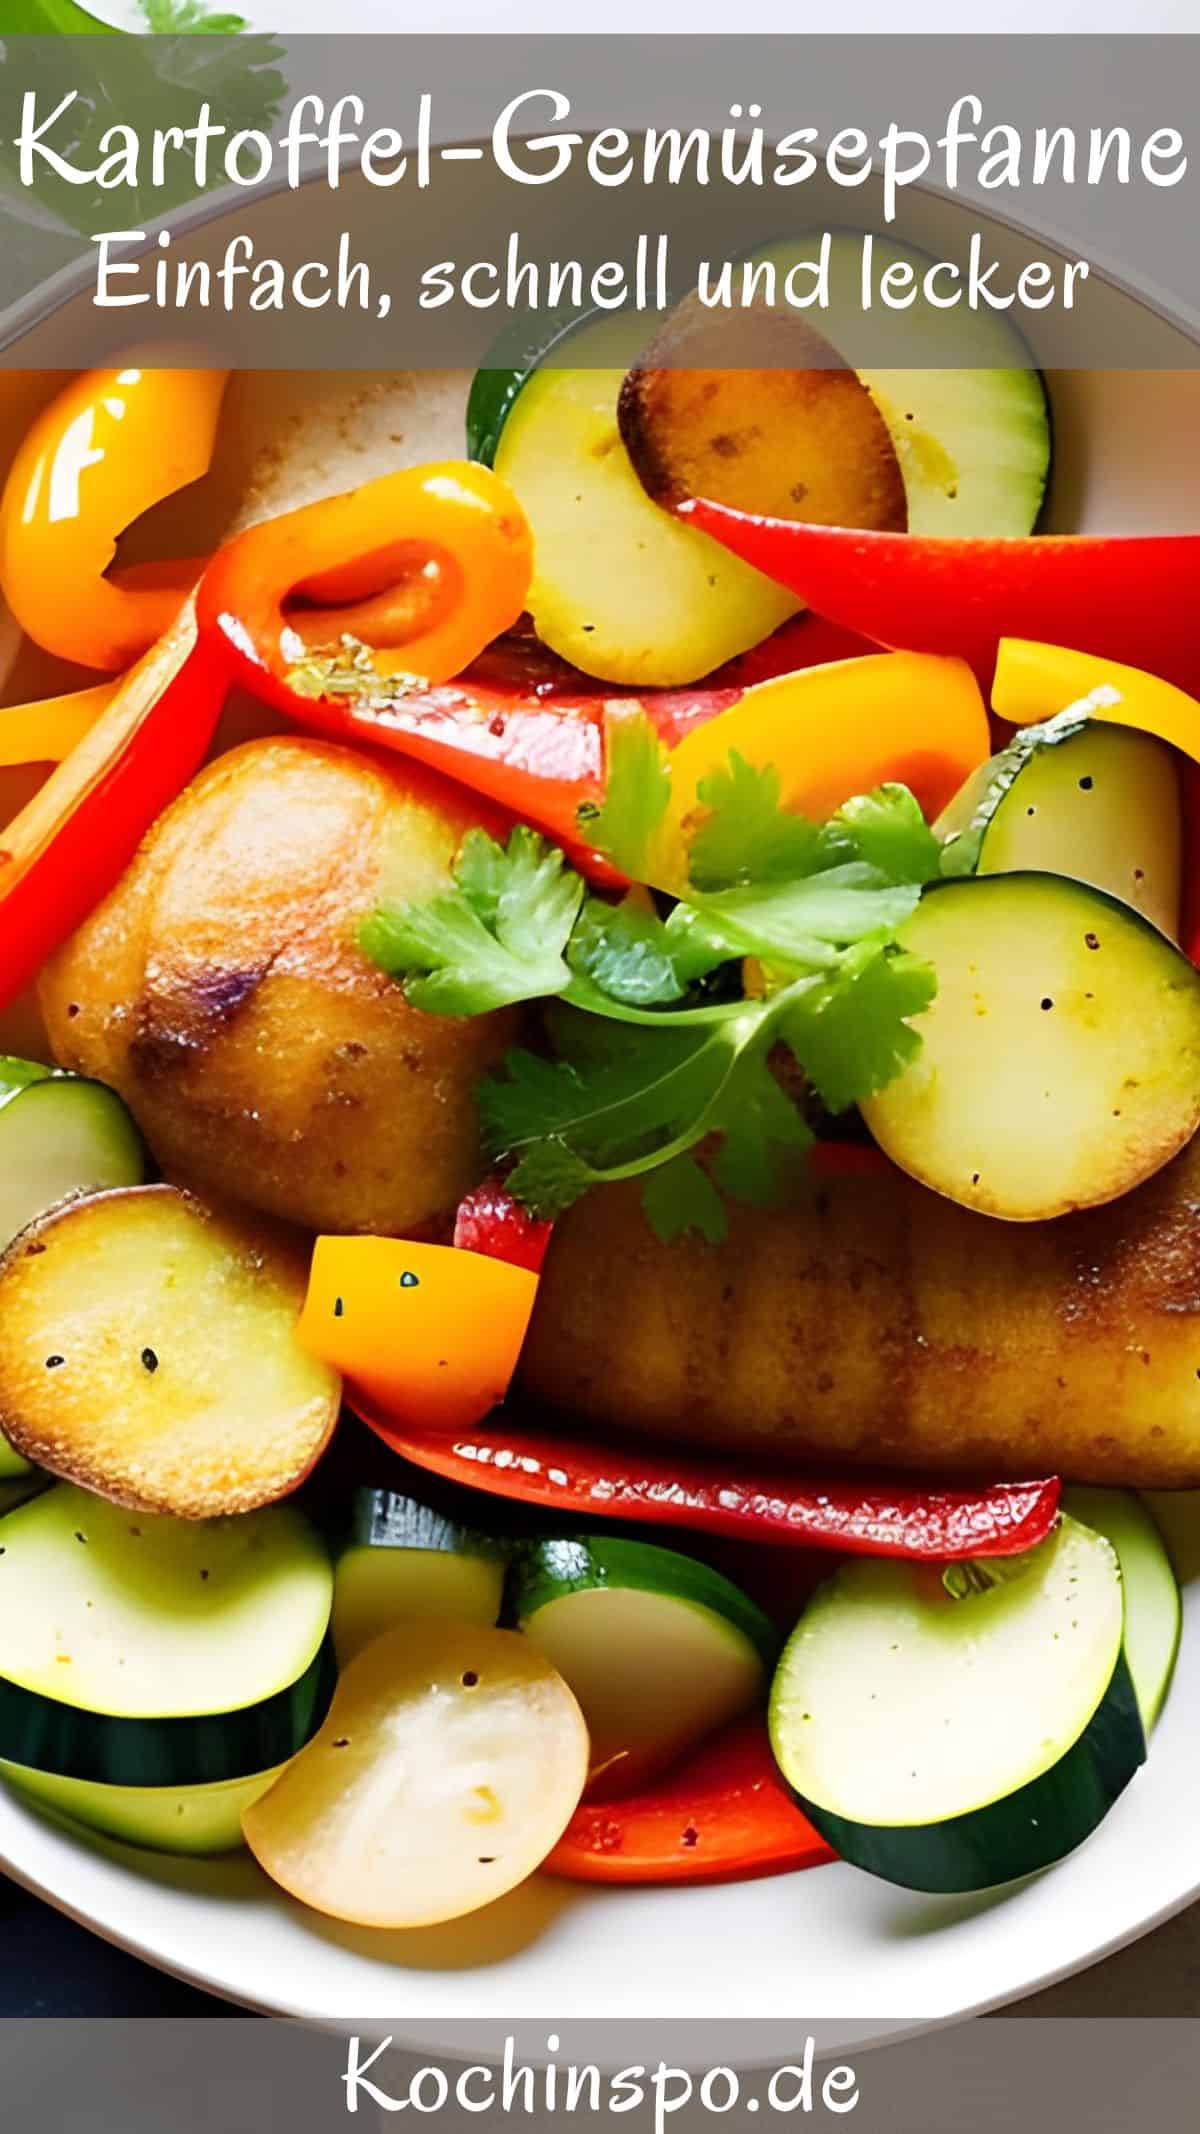 Ein Teller mit der Kartoffel-Gemüsepfanne.